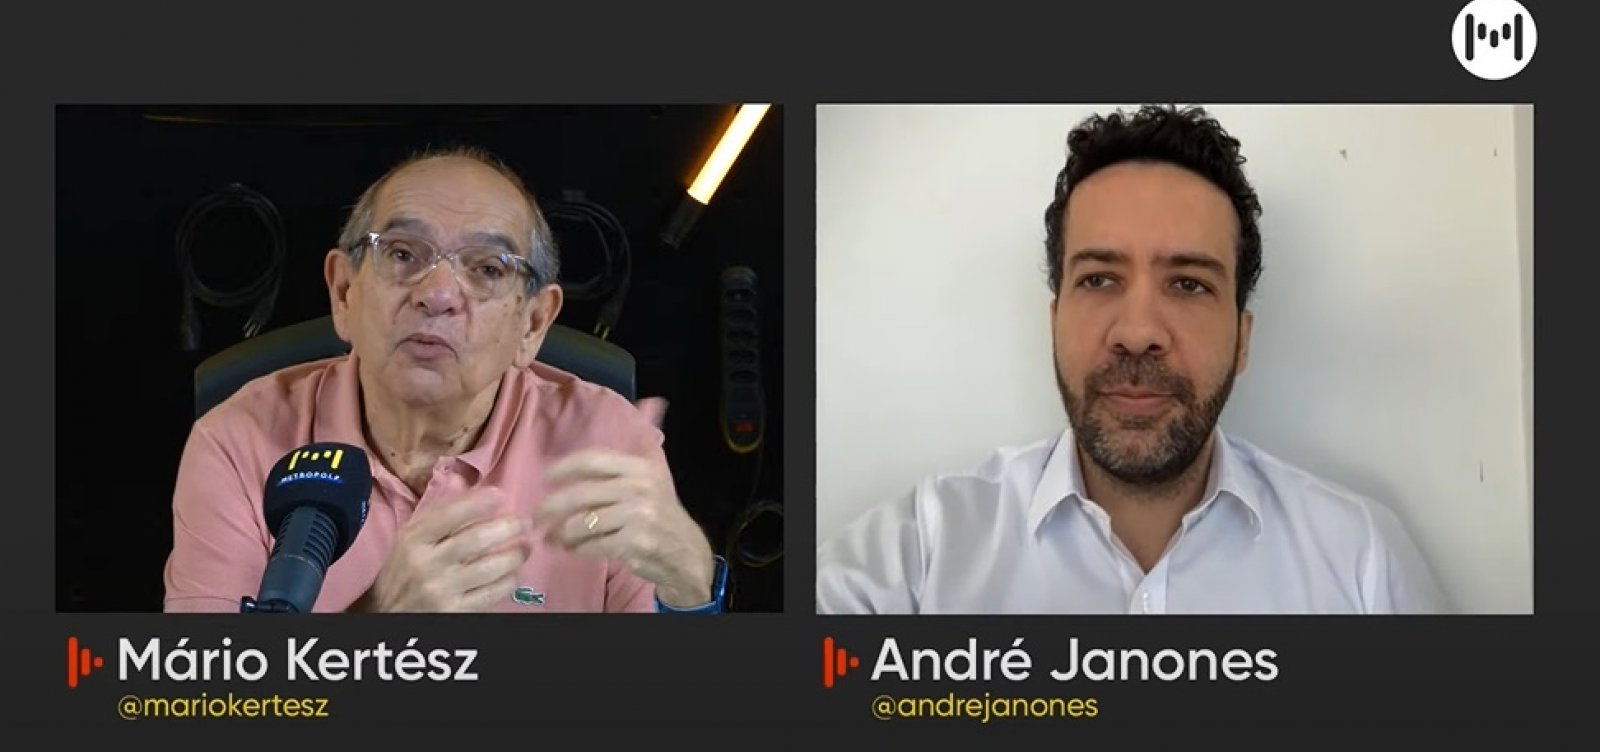 Se Bolsonaro for reeleito, o auxílio emergencial vai acabar, diz deputado André Janones